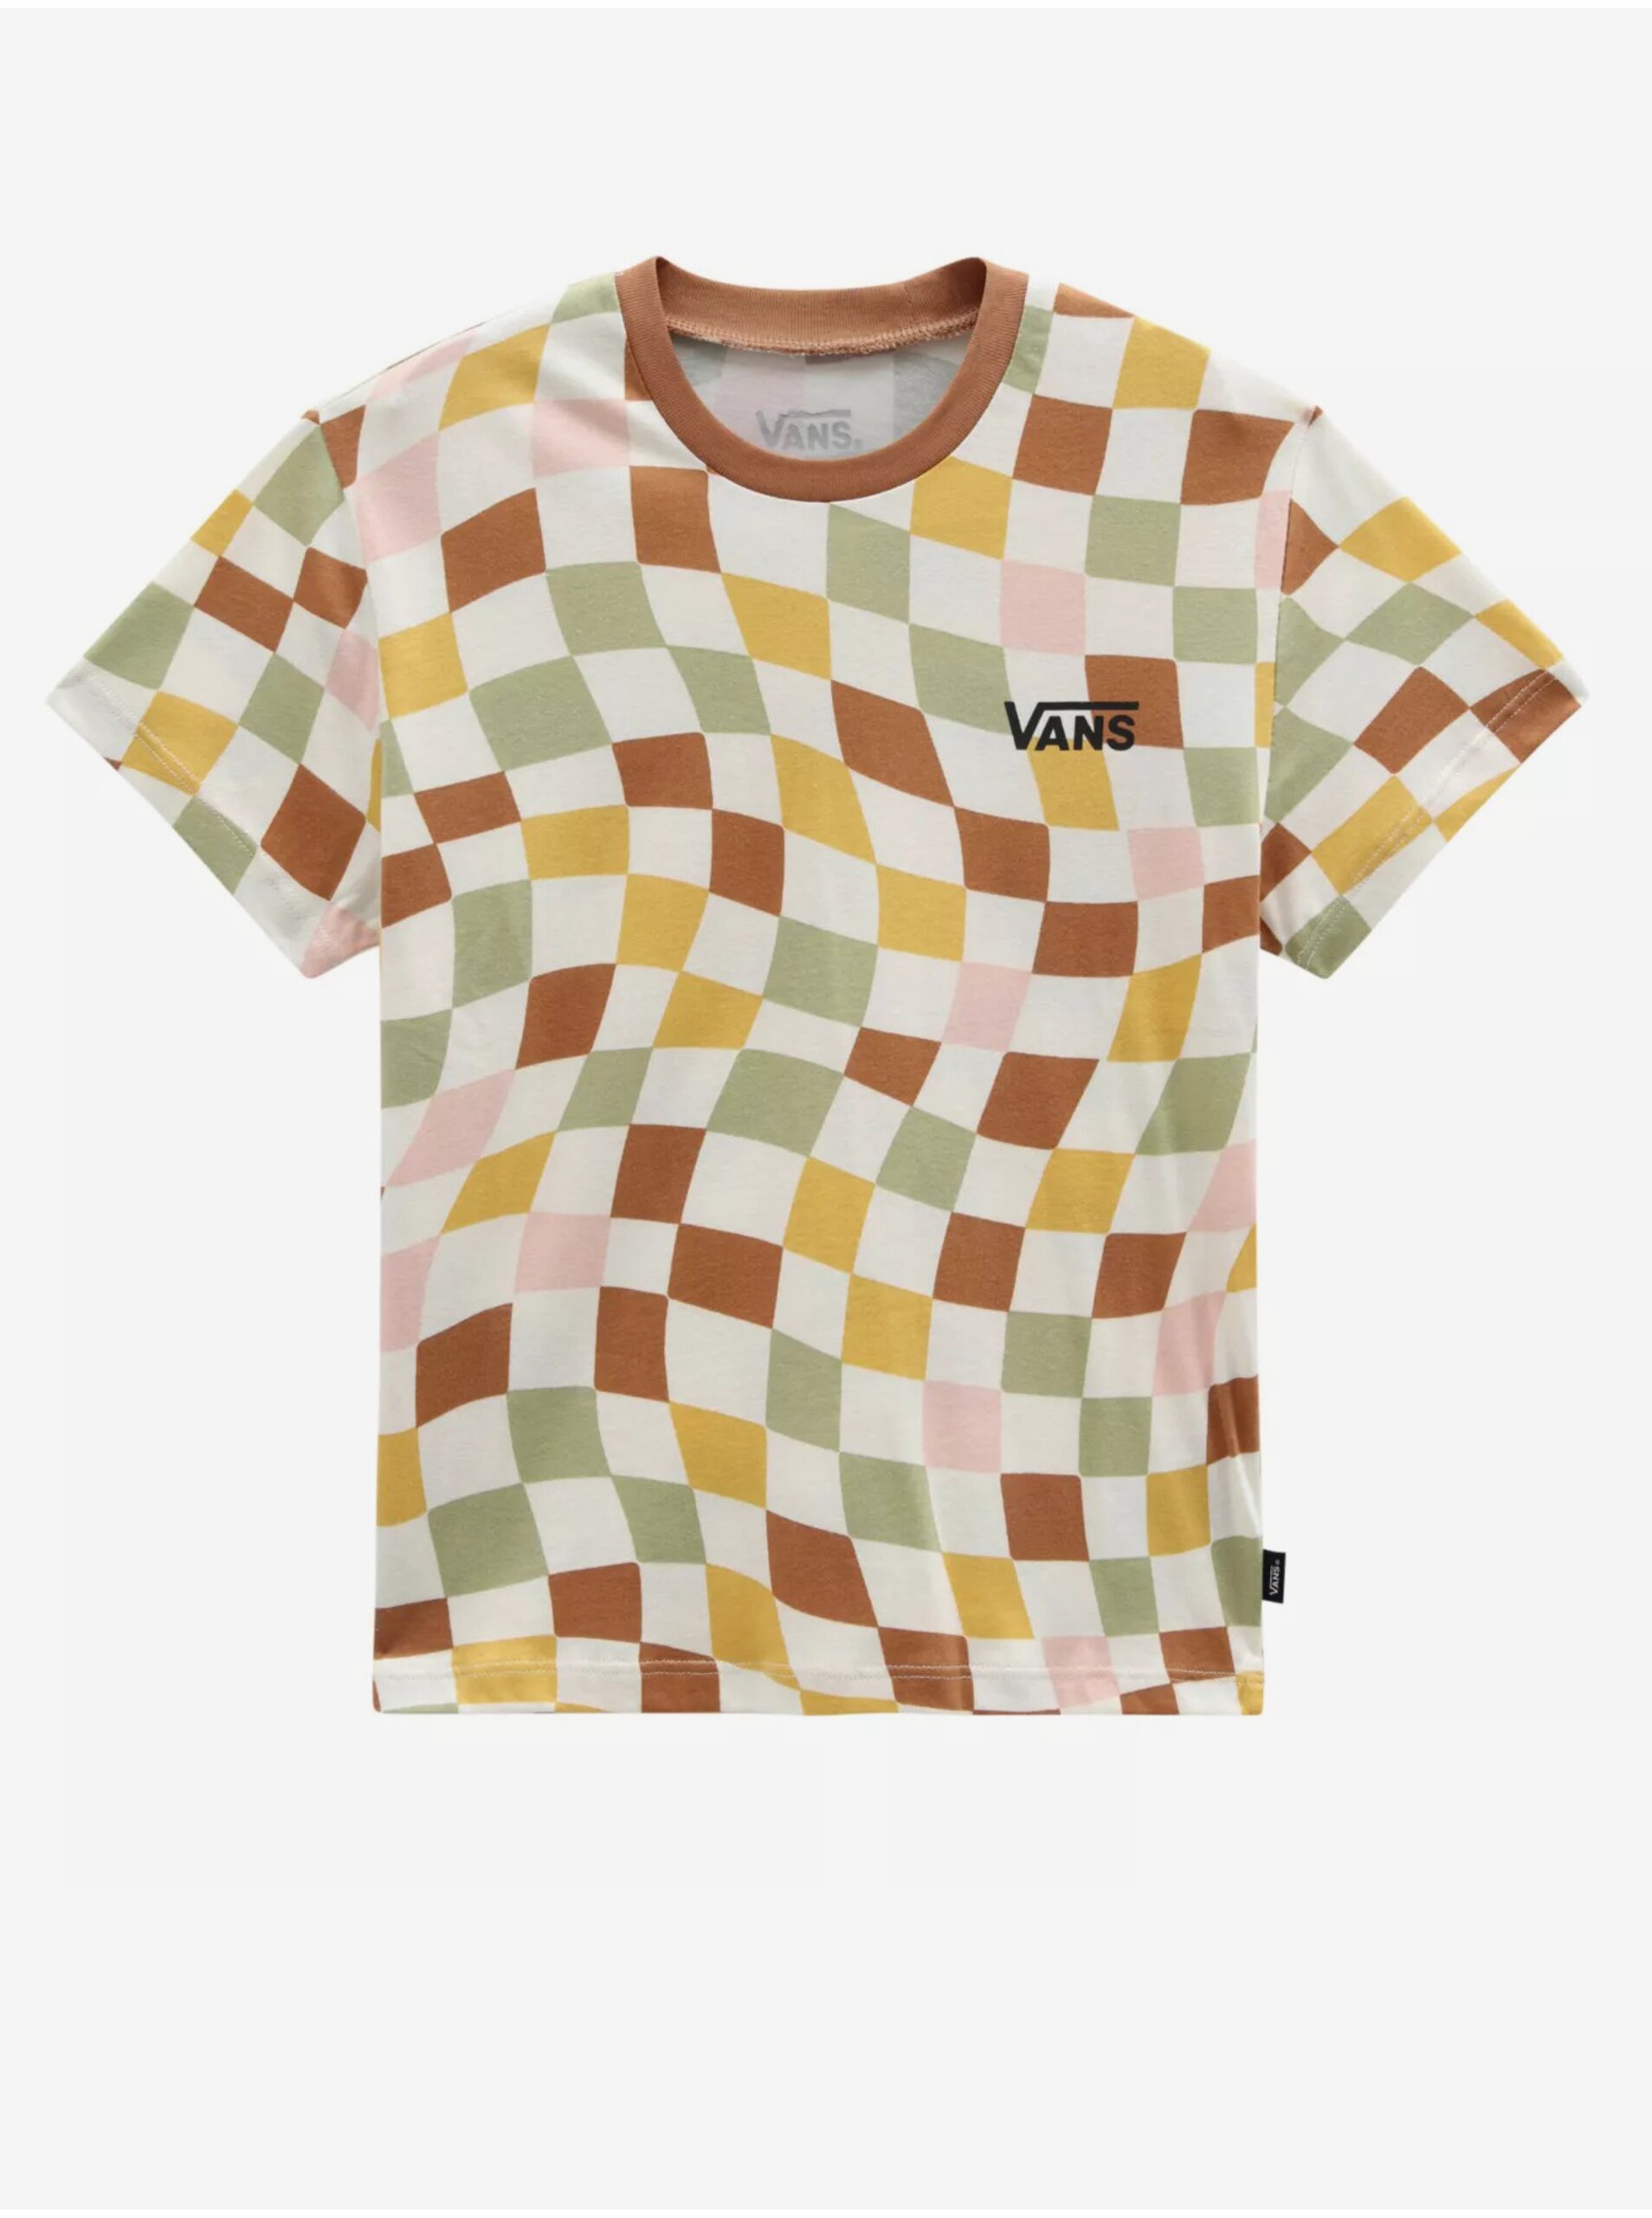 E-shop Bielo-hnedé dievčenské kockované tričko VANS Checker Print